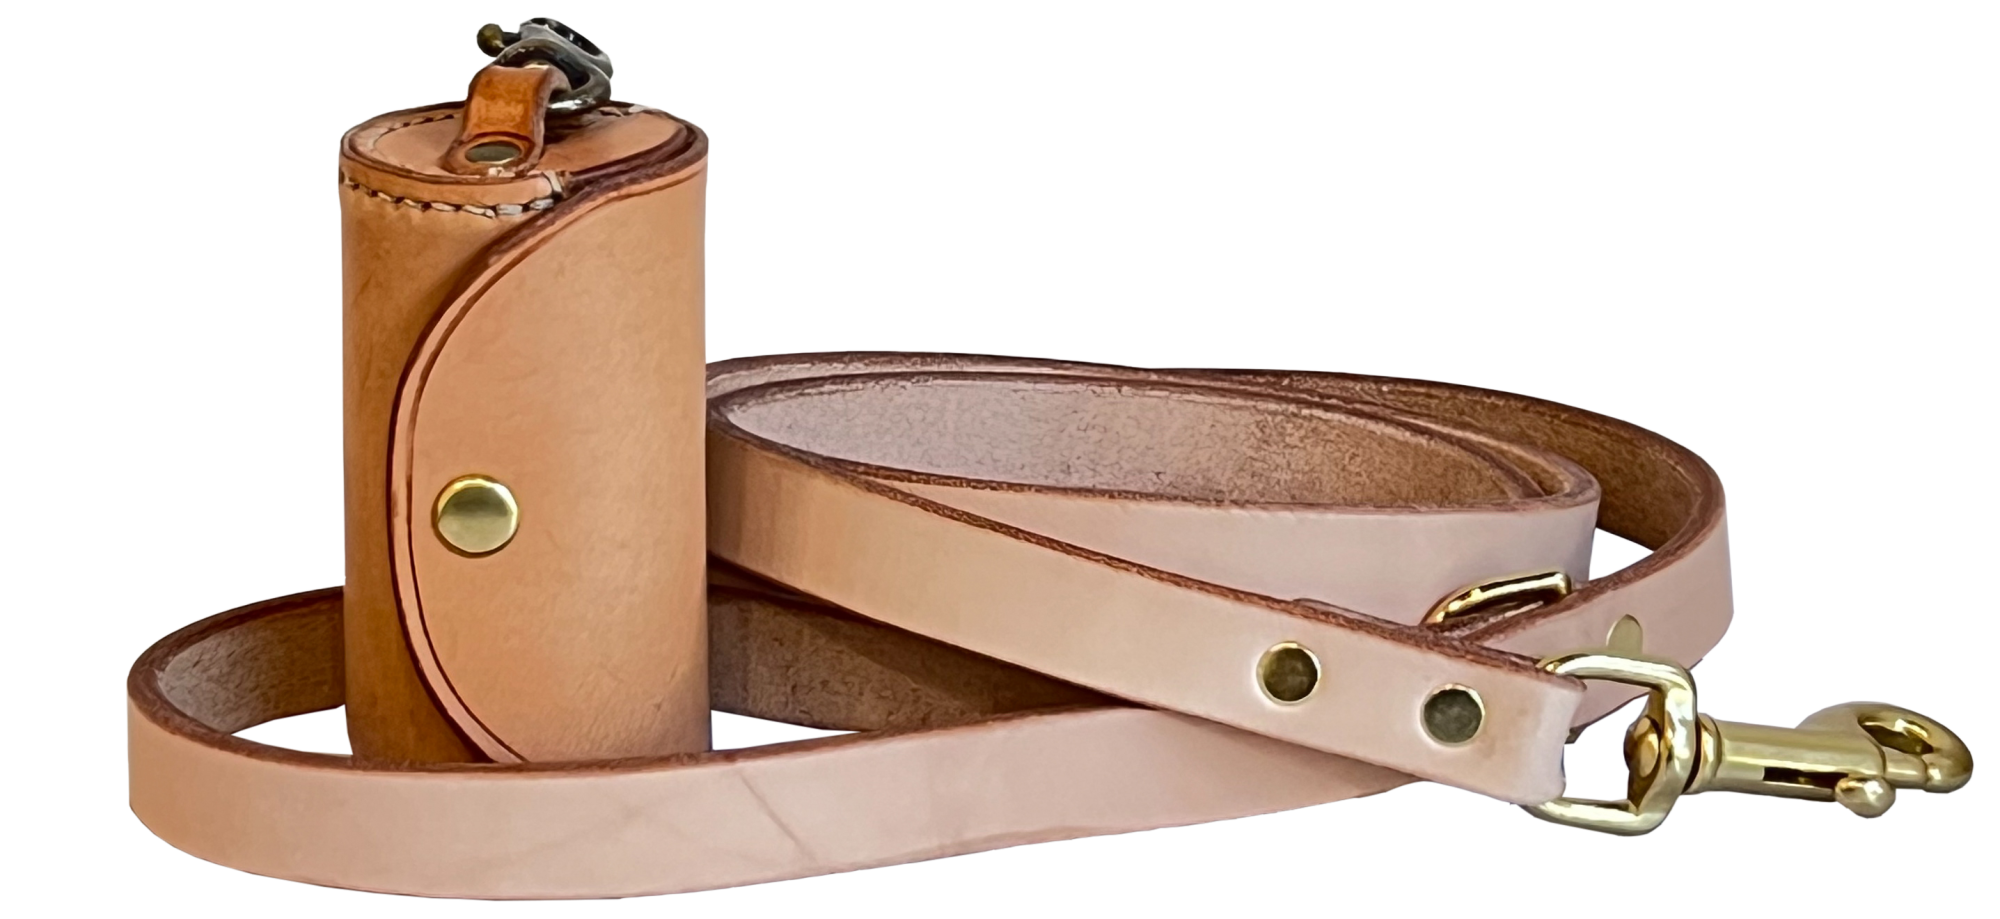 Amano Goods leather dog leash and dog bag holder